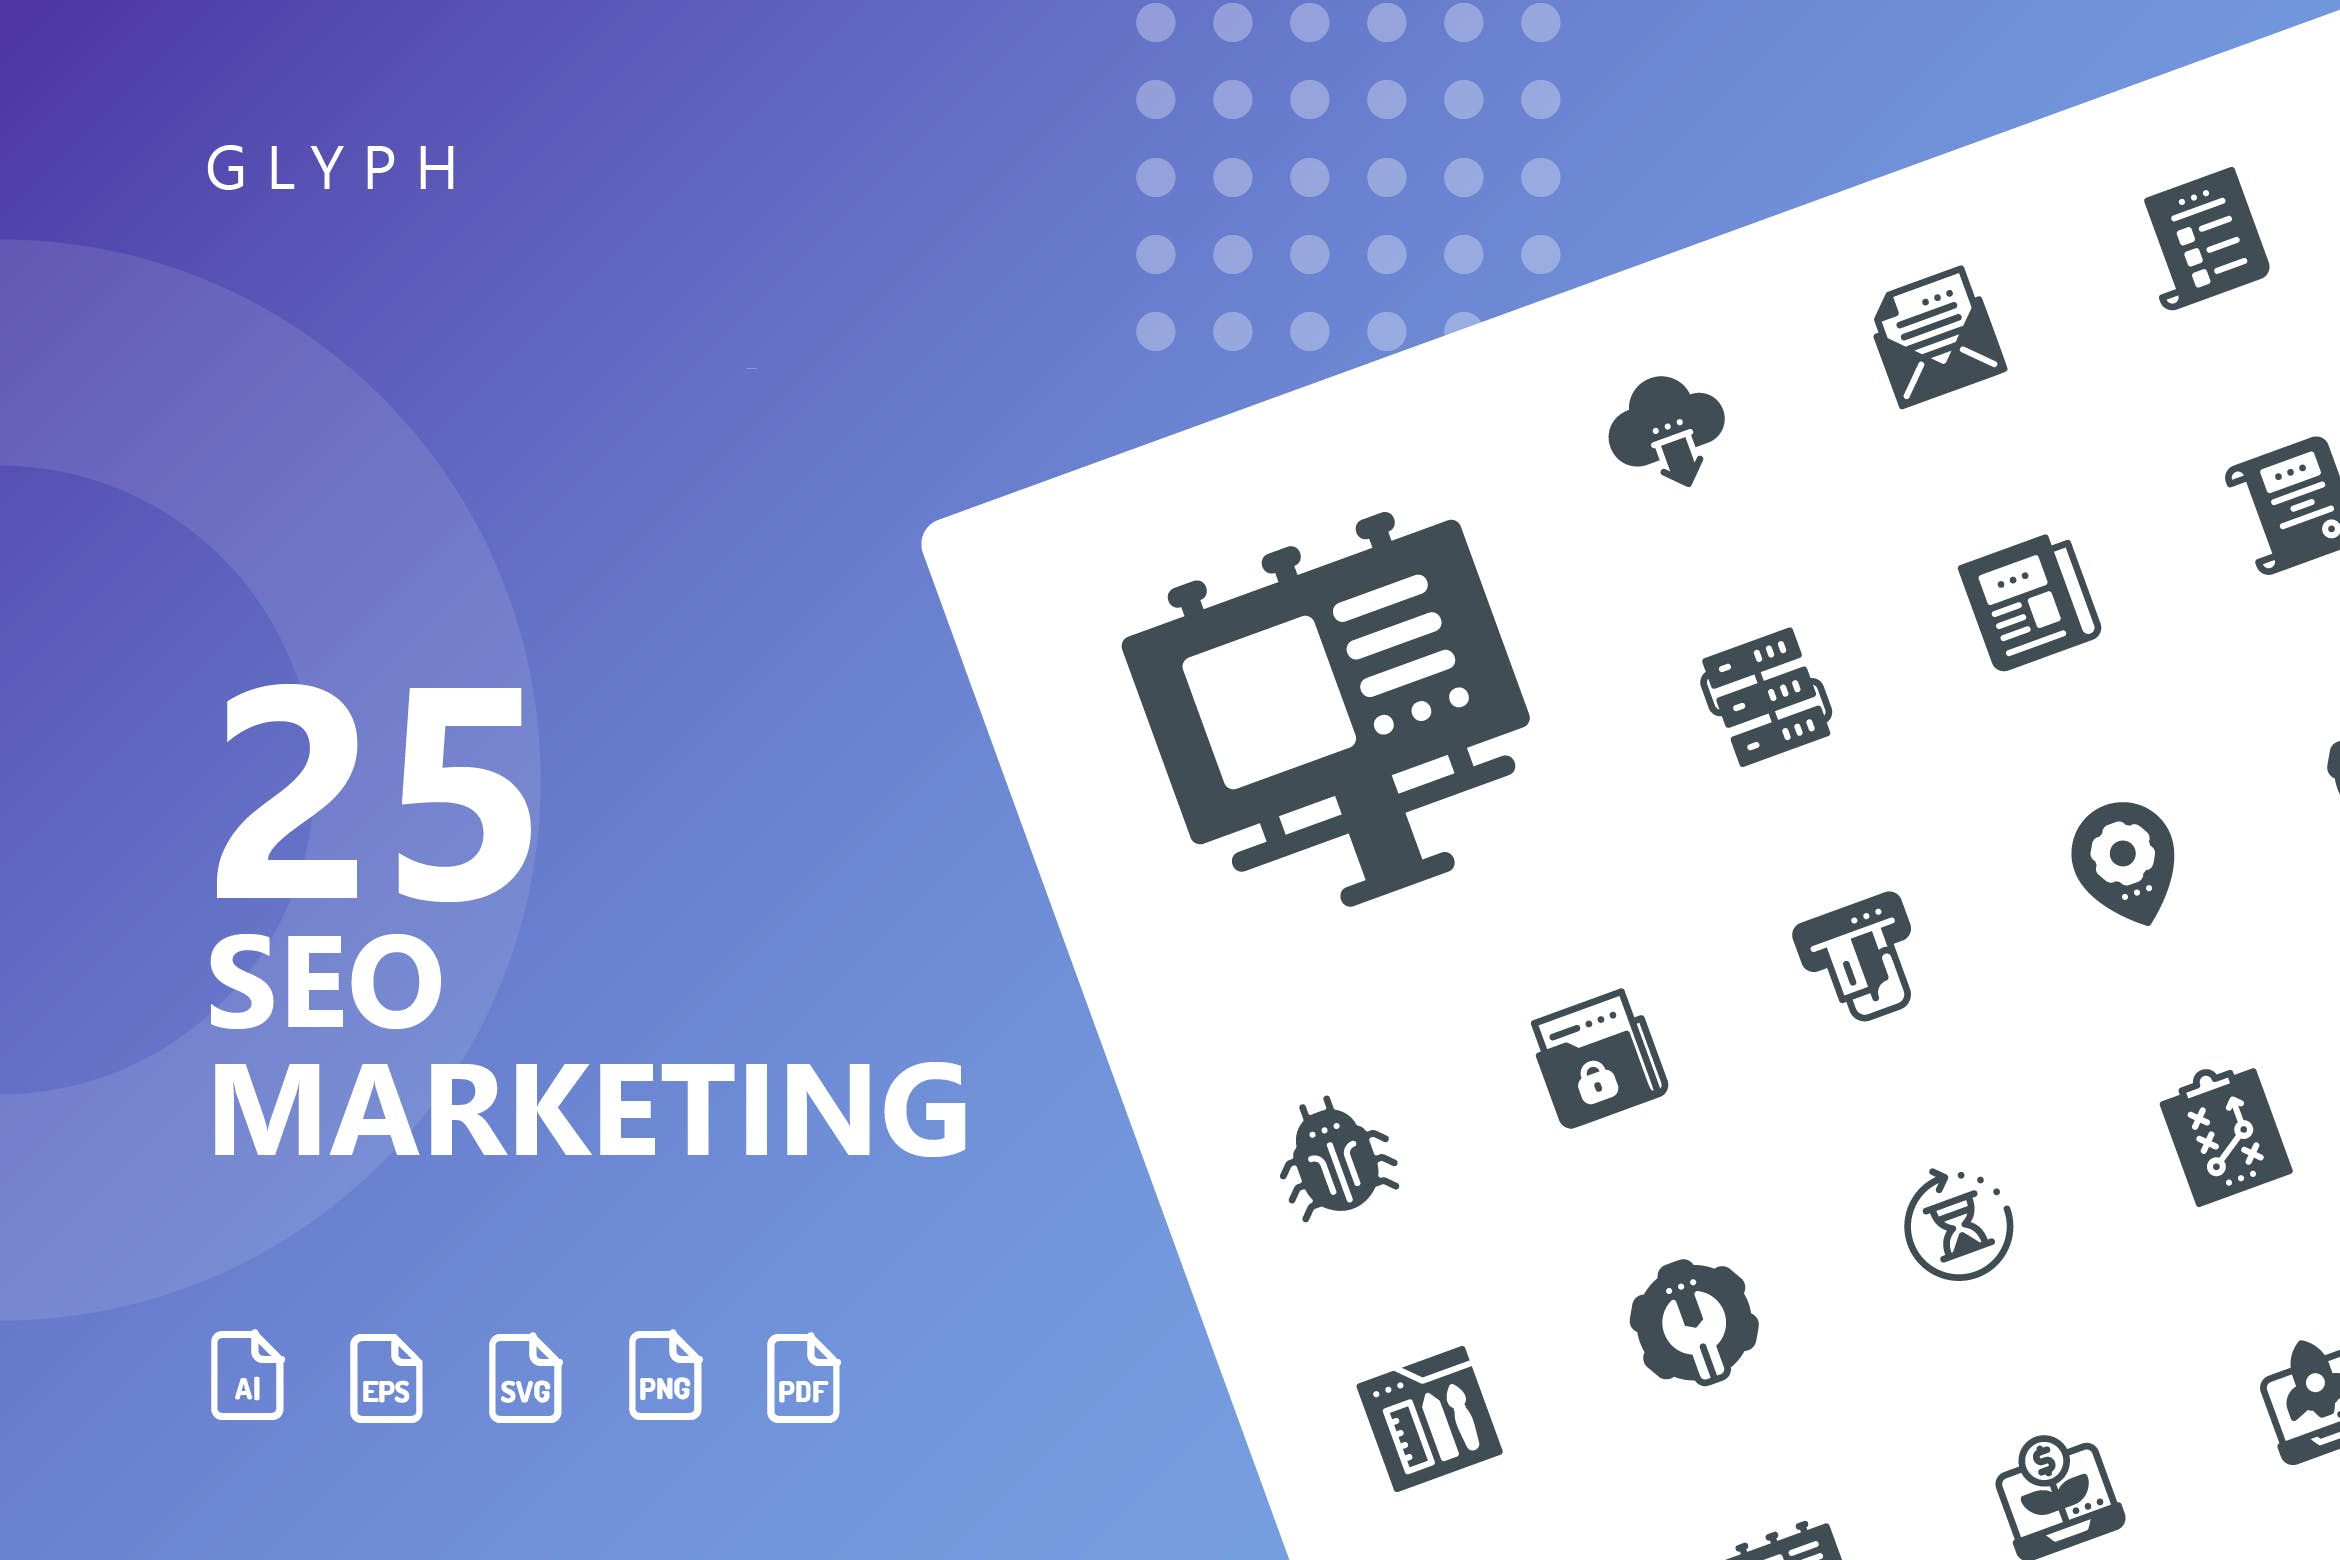 25枚SEO搜索引擎优化营销矢量字体素材库精选图标v1 SEO Marketing Glyph Icons插图